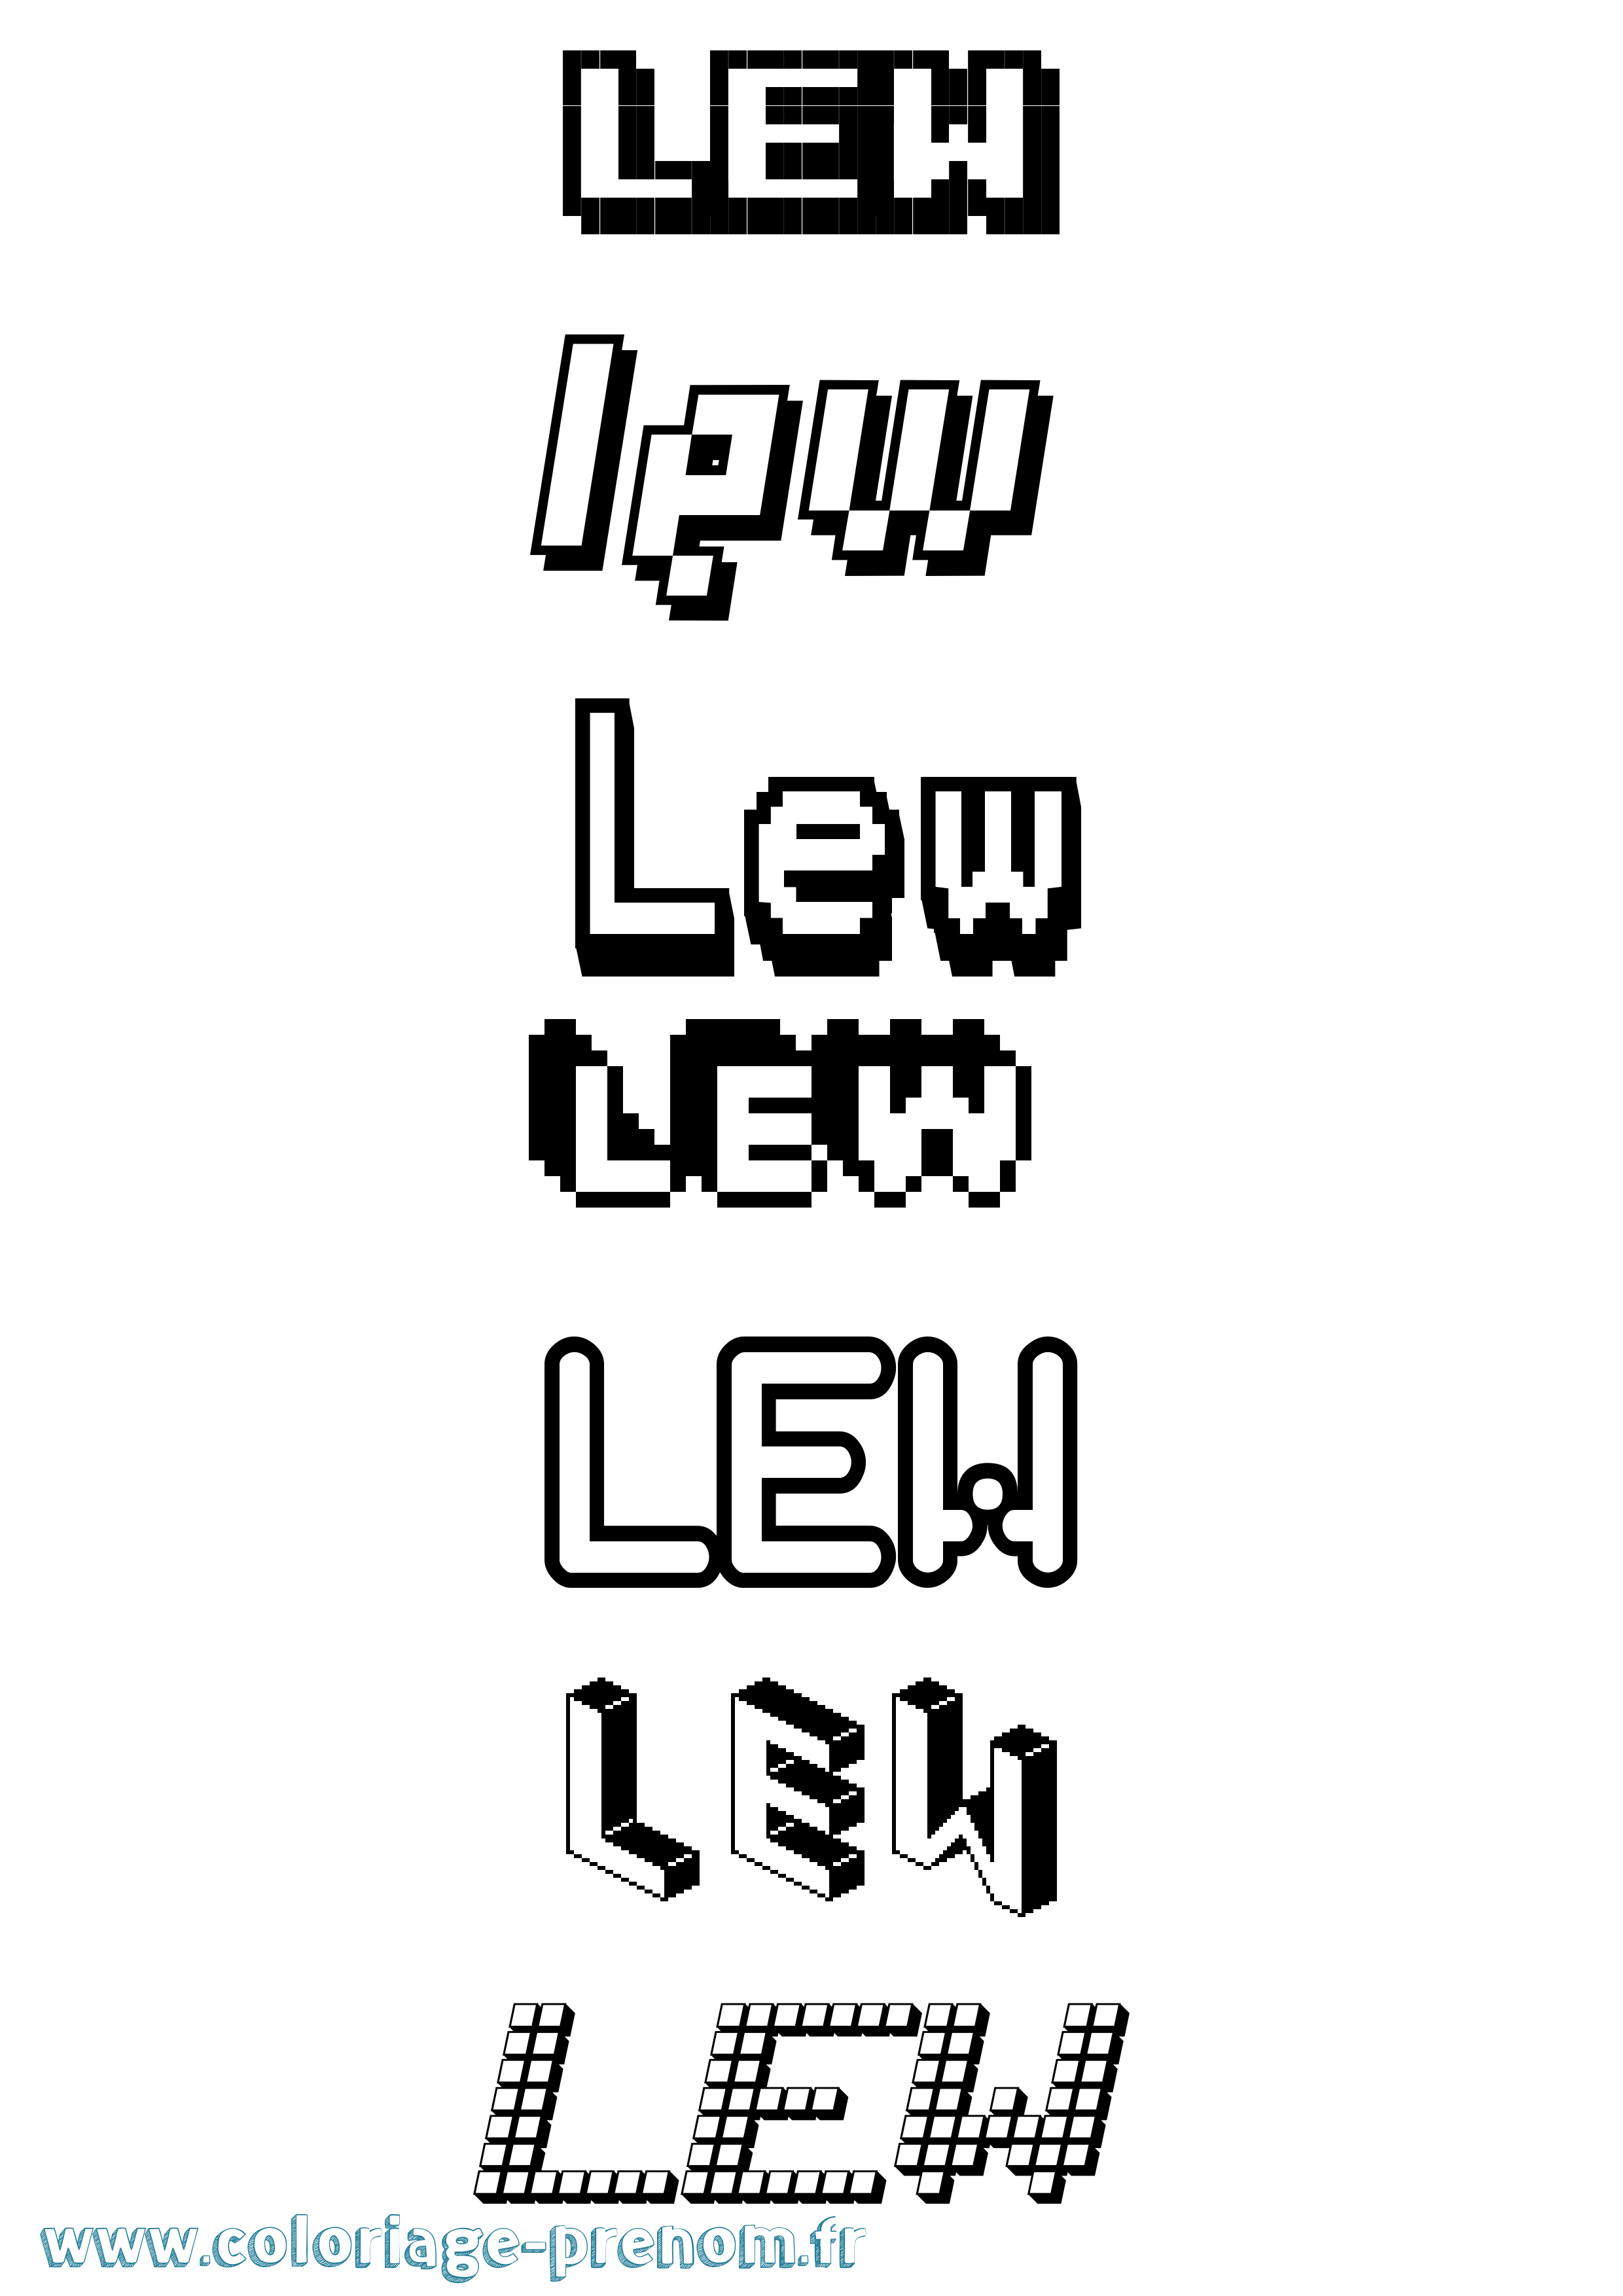 Coloriage prénom Lew Pixel